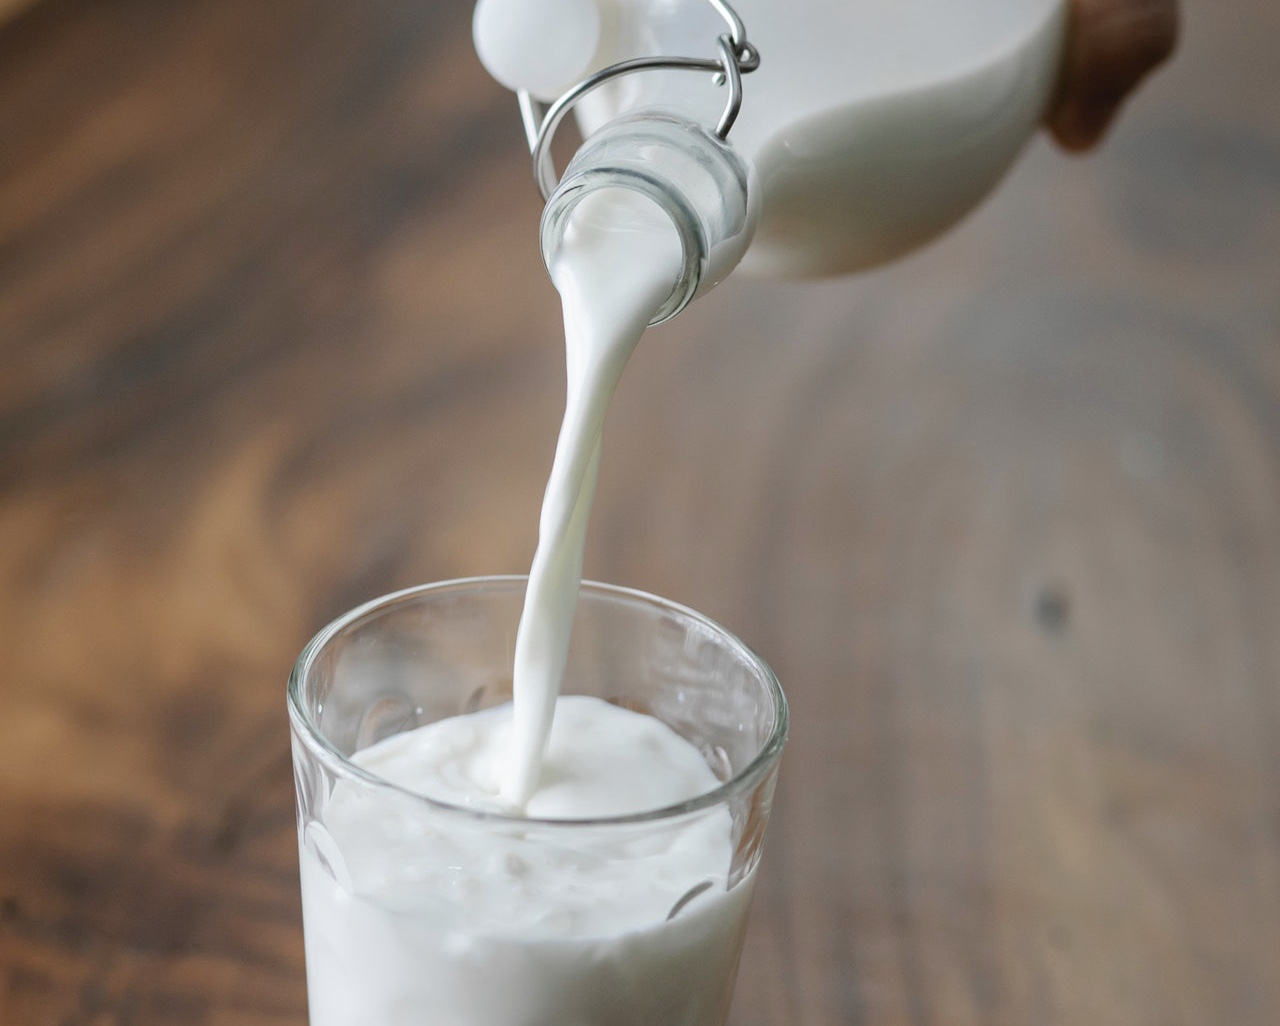 La leche entre las bebidas sin alcohol con mayor aumento